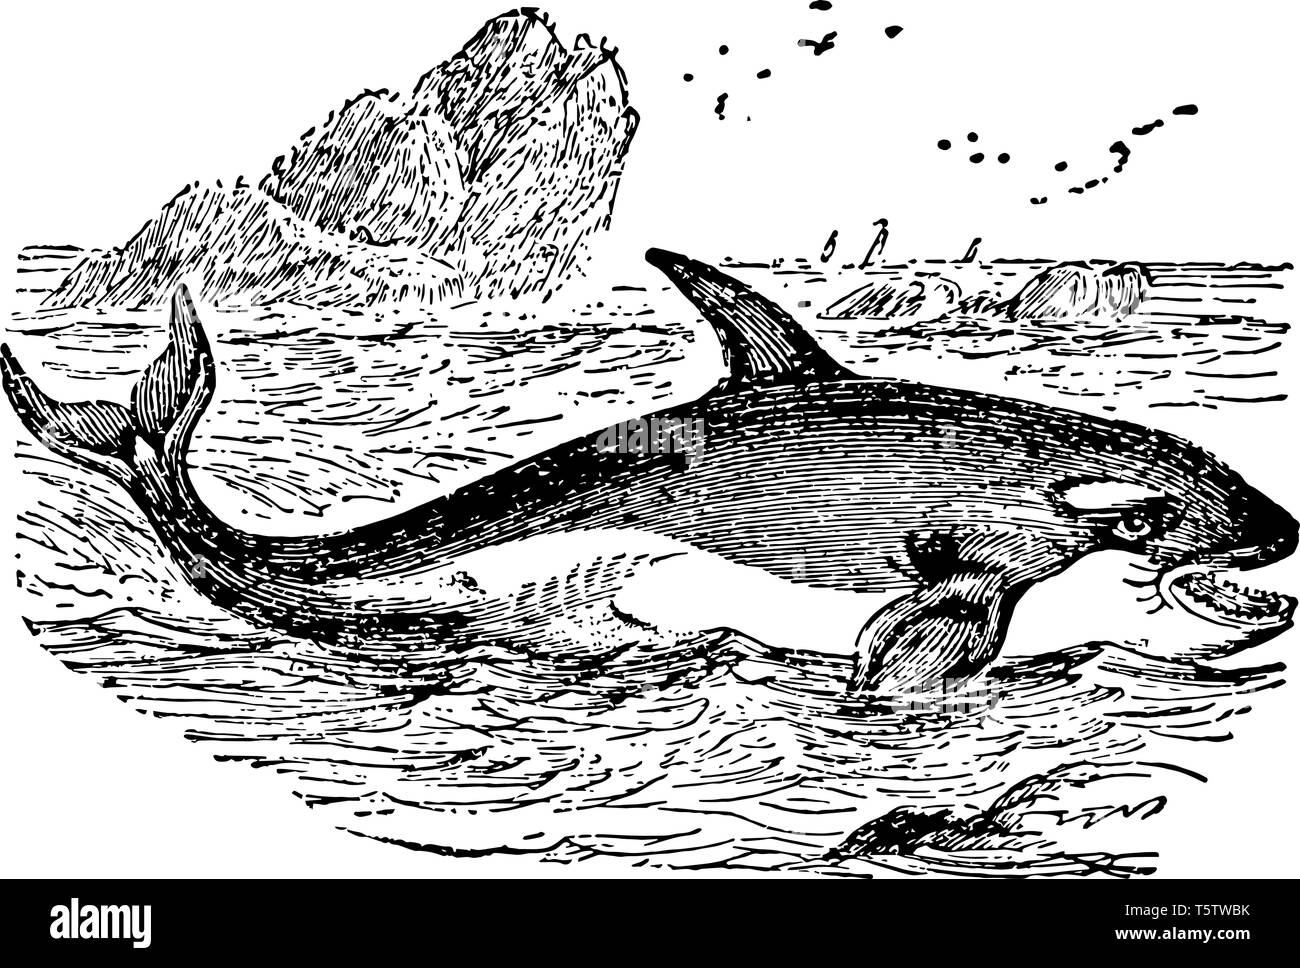 Orca est une baleine appartenant à la famille des dauphins océaniques vintage dessin ou gravure illustration. Illustration de Vecteur